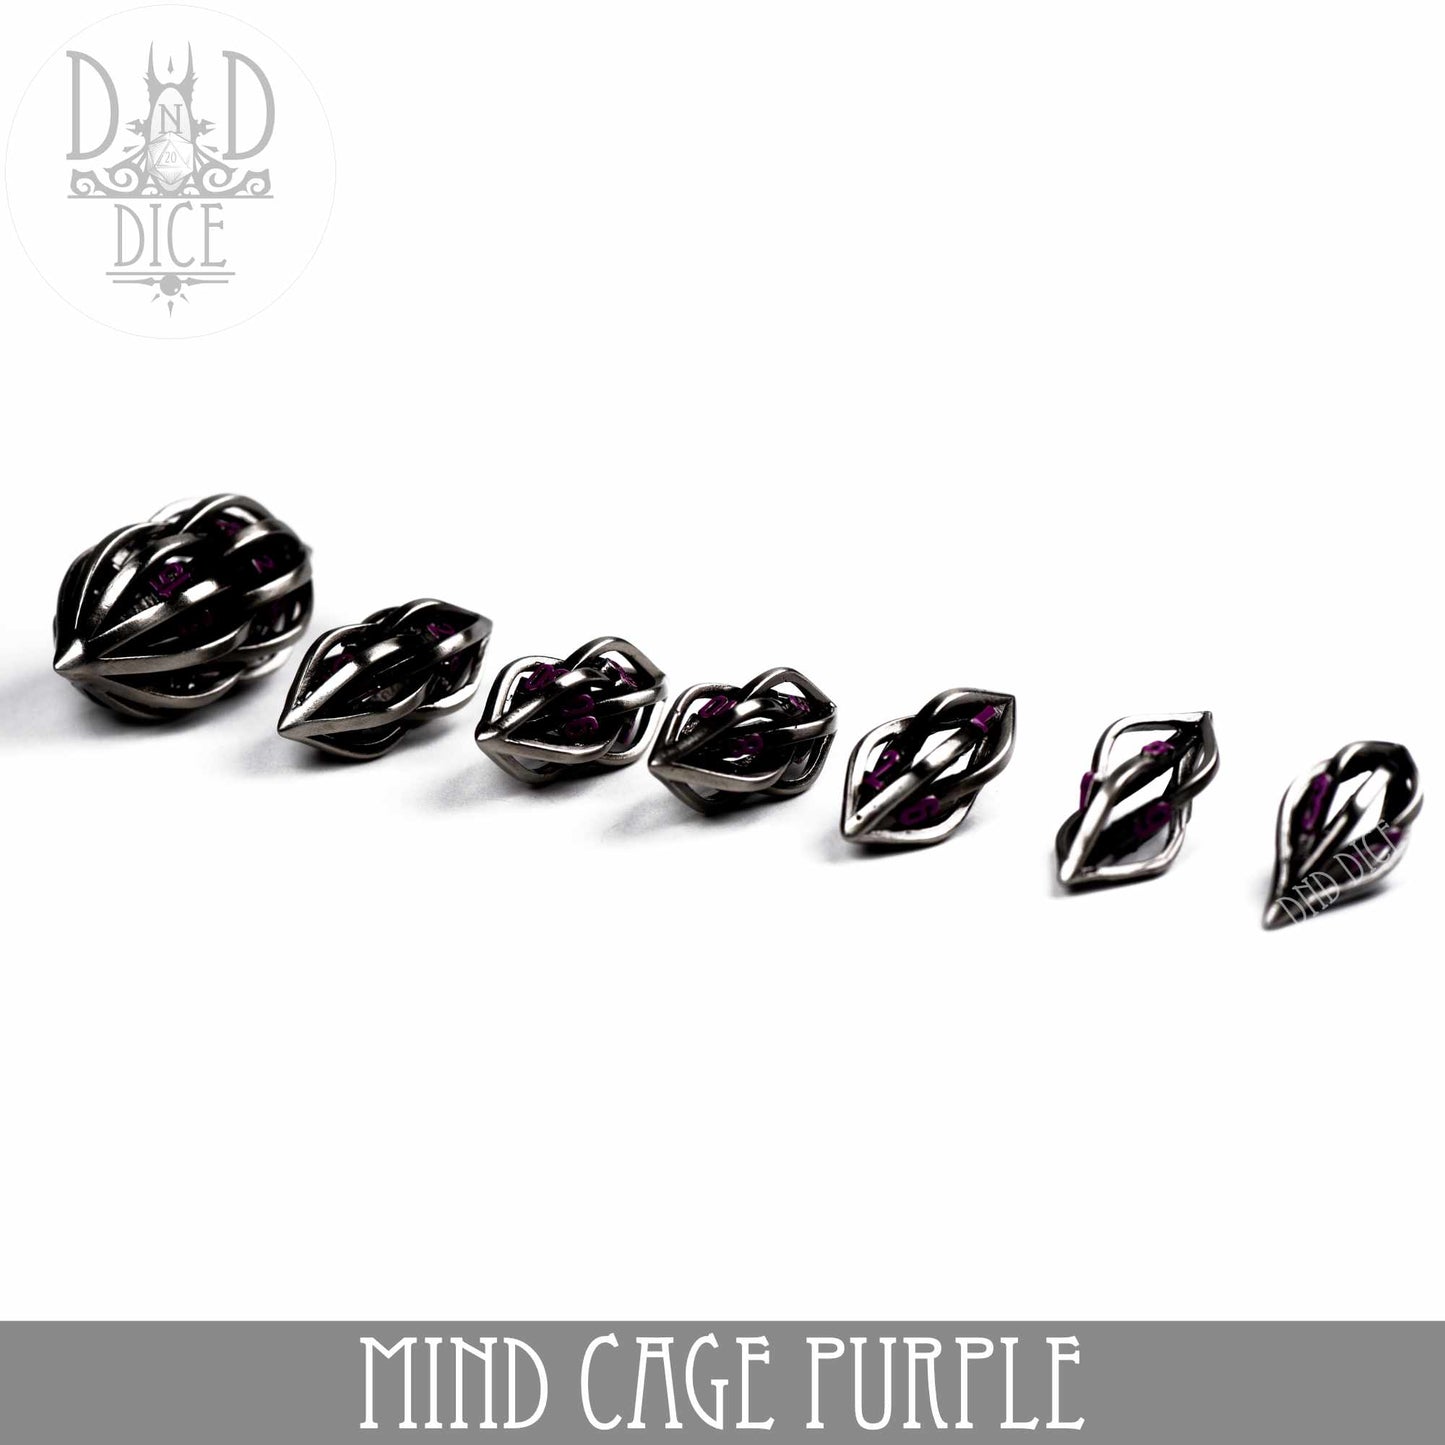 Mind Cage Purple - Jeu de dés en métal (coffret cadeau)